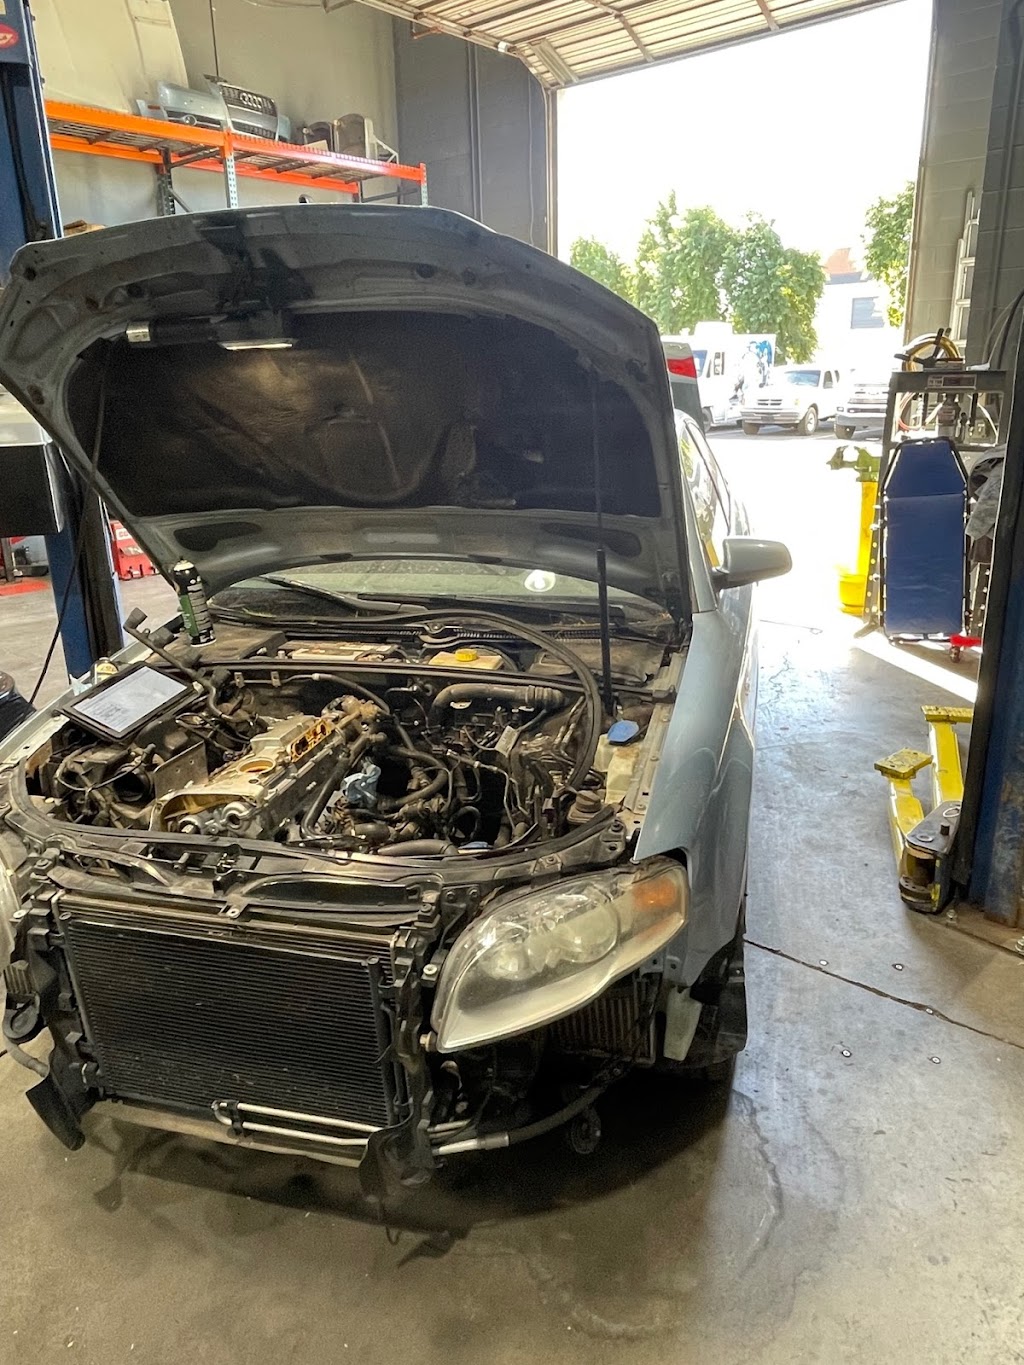 Edmunds Automotive Repair | 13200 W Foxfire Dr Ste 139, Surprise, AZ 85378, USA | Phone: (623) 556-5067